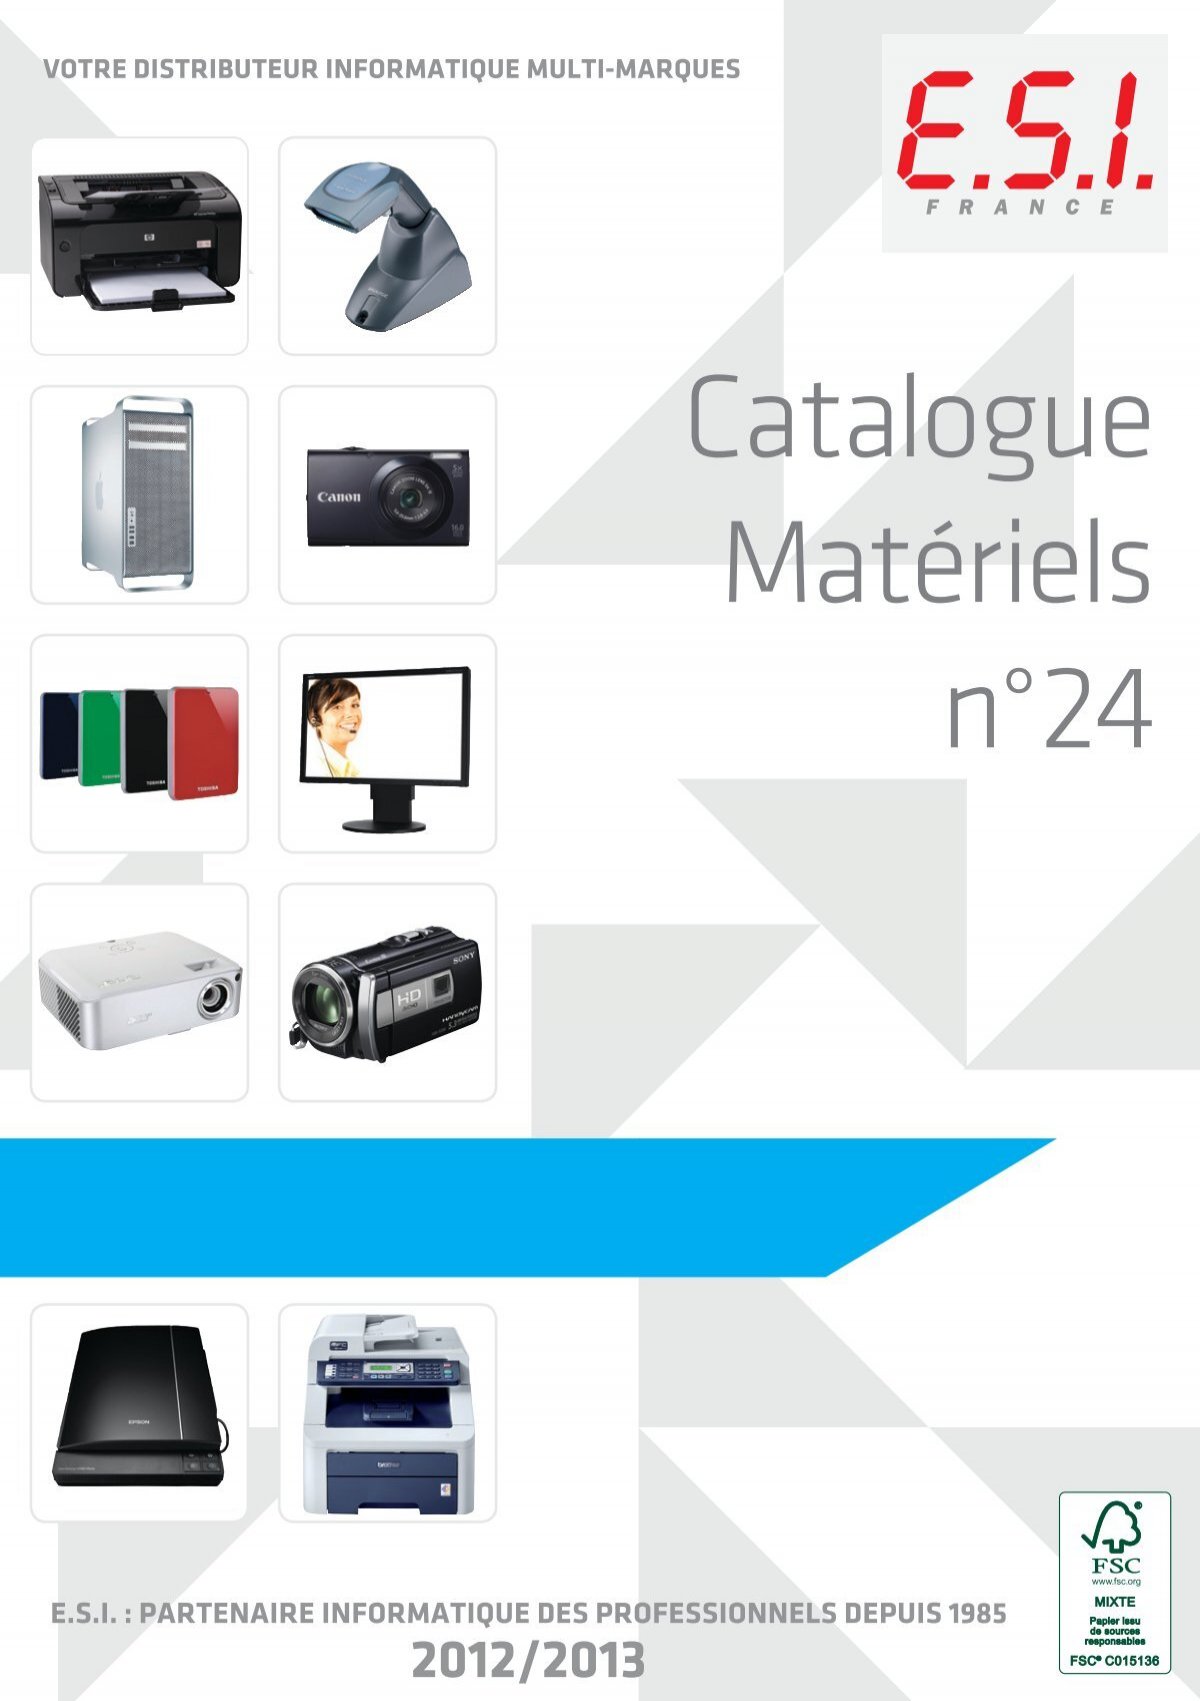 Découvrez notre gamme complète d'imprimantes médicales - Sony Pro